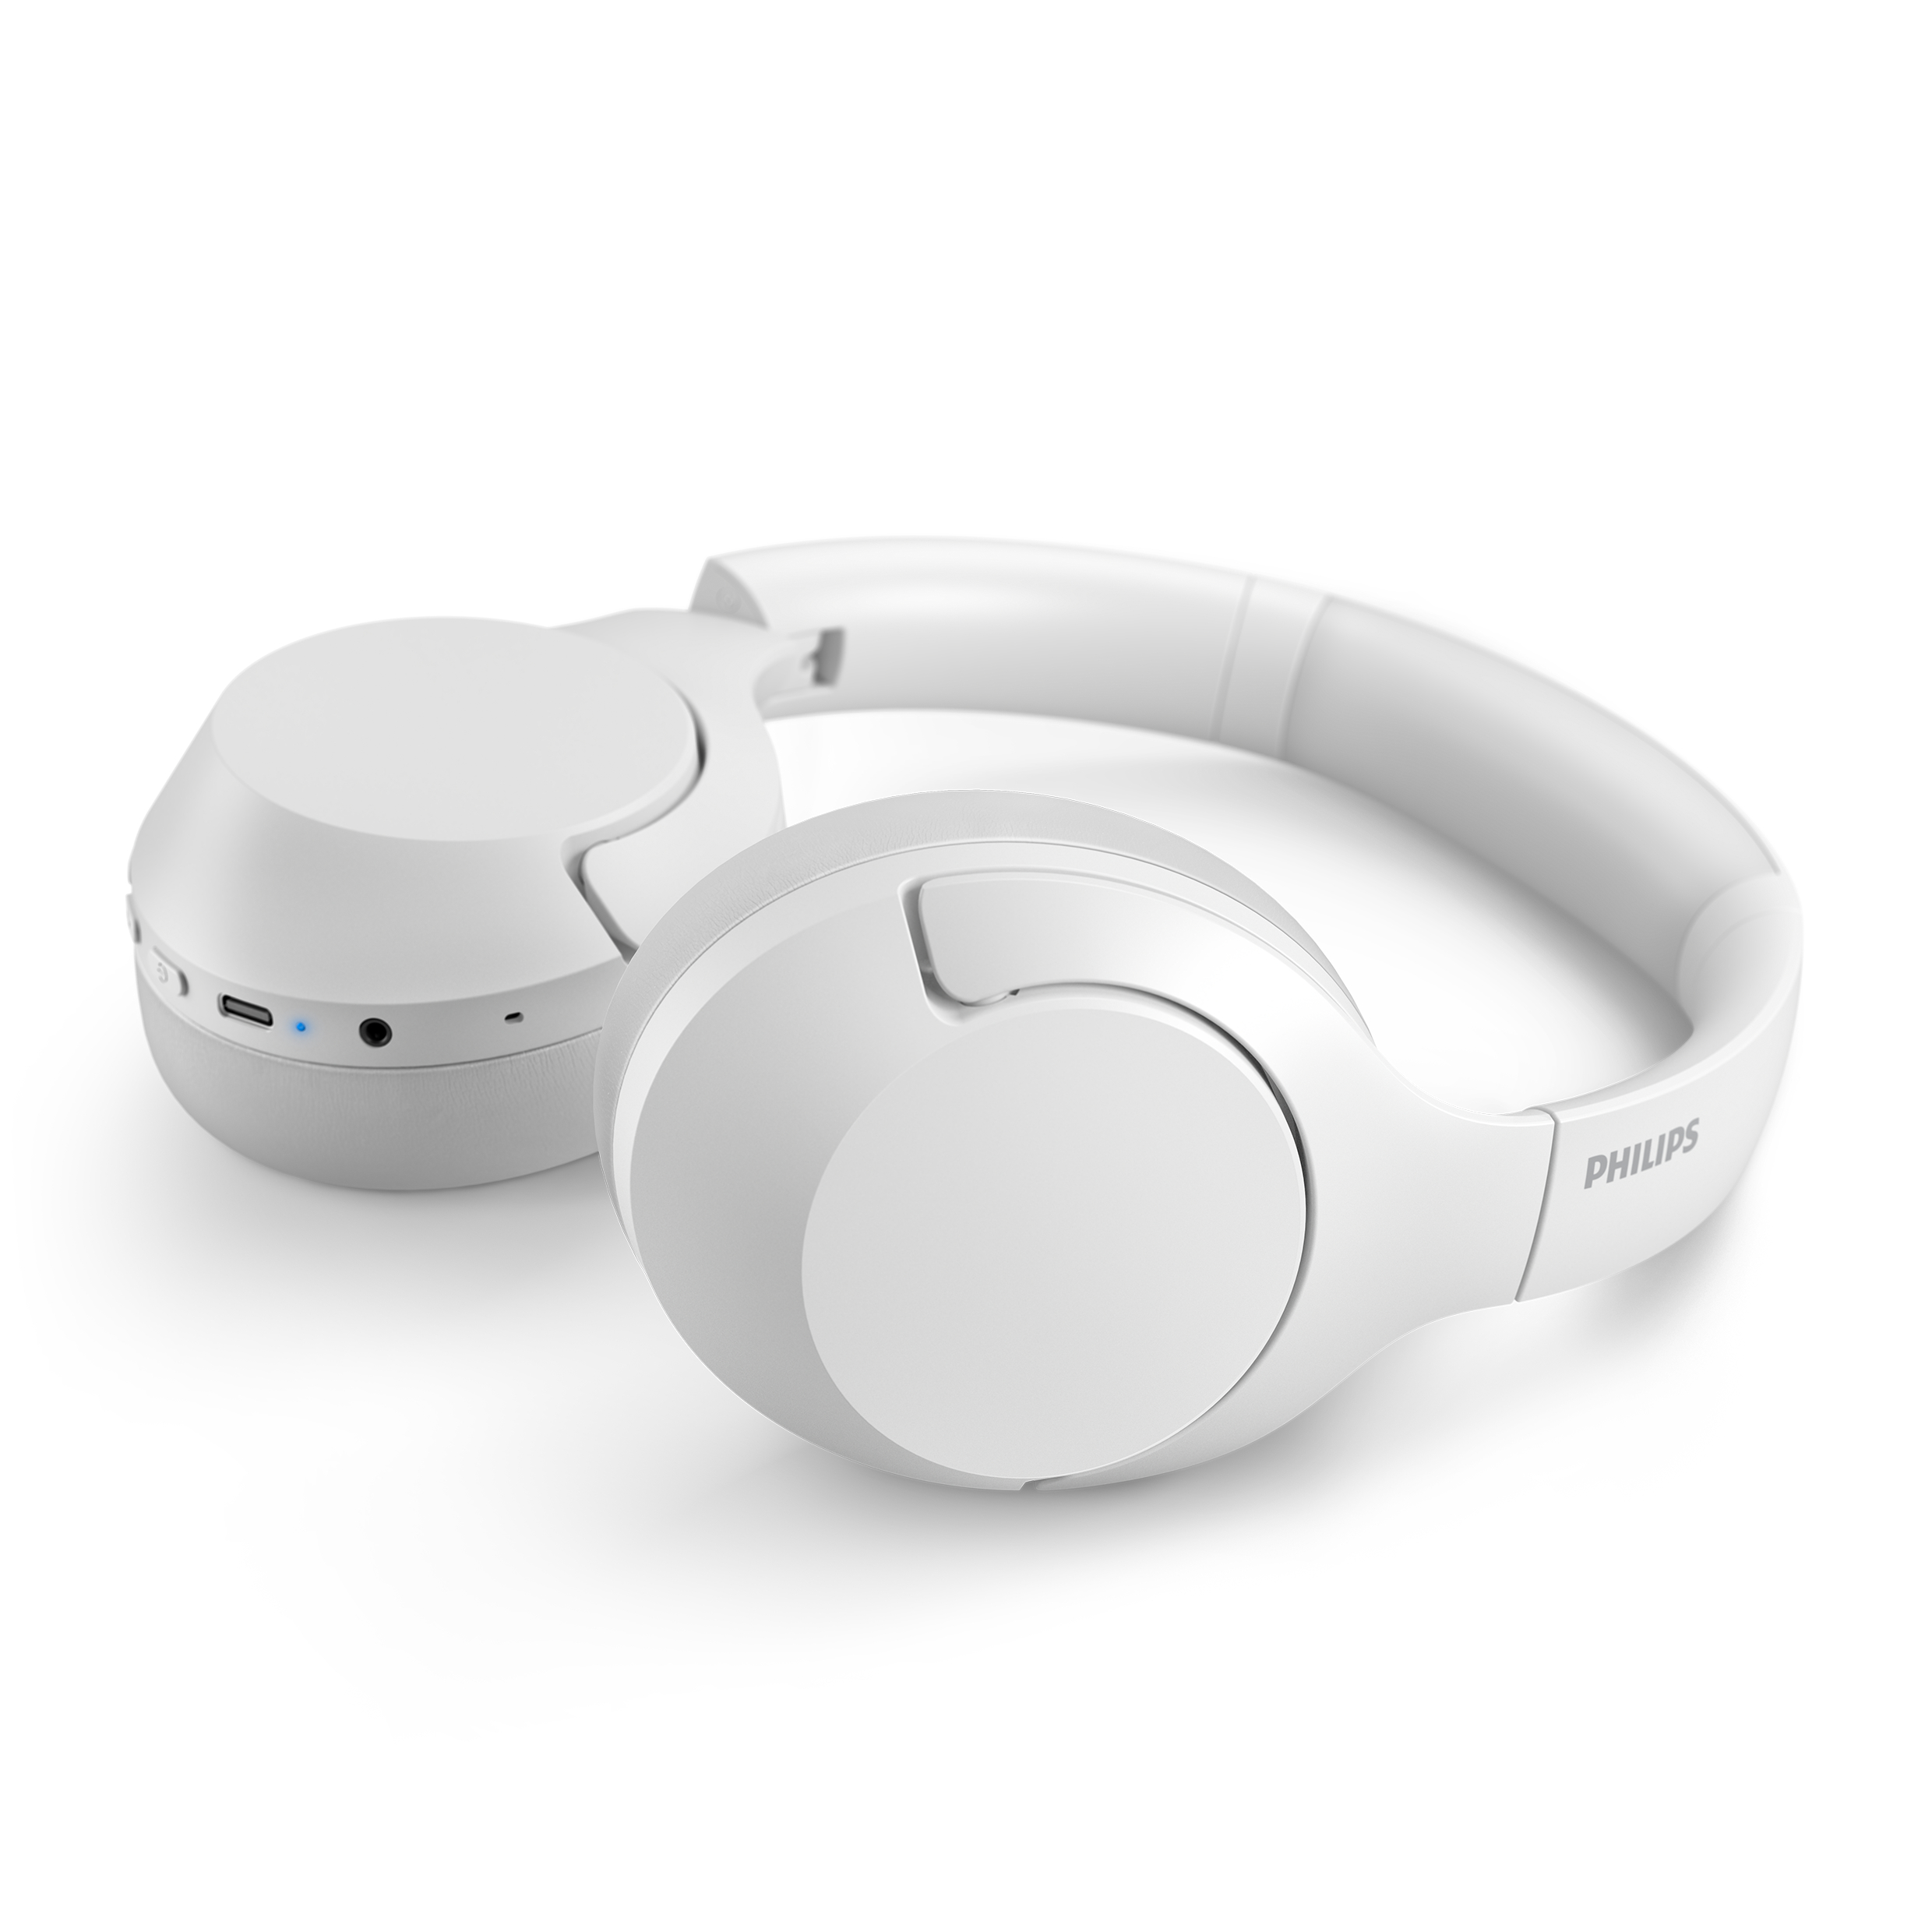 PHILIPS TAH8506WT/00, Over-ear Kopfhörer Bluetooth White